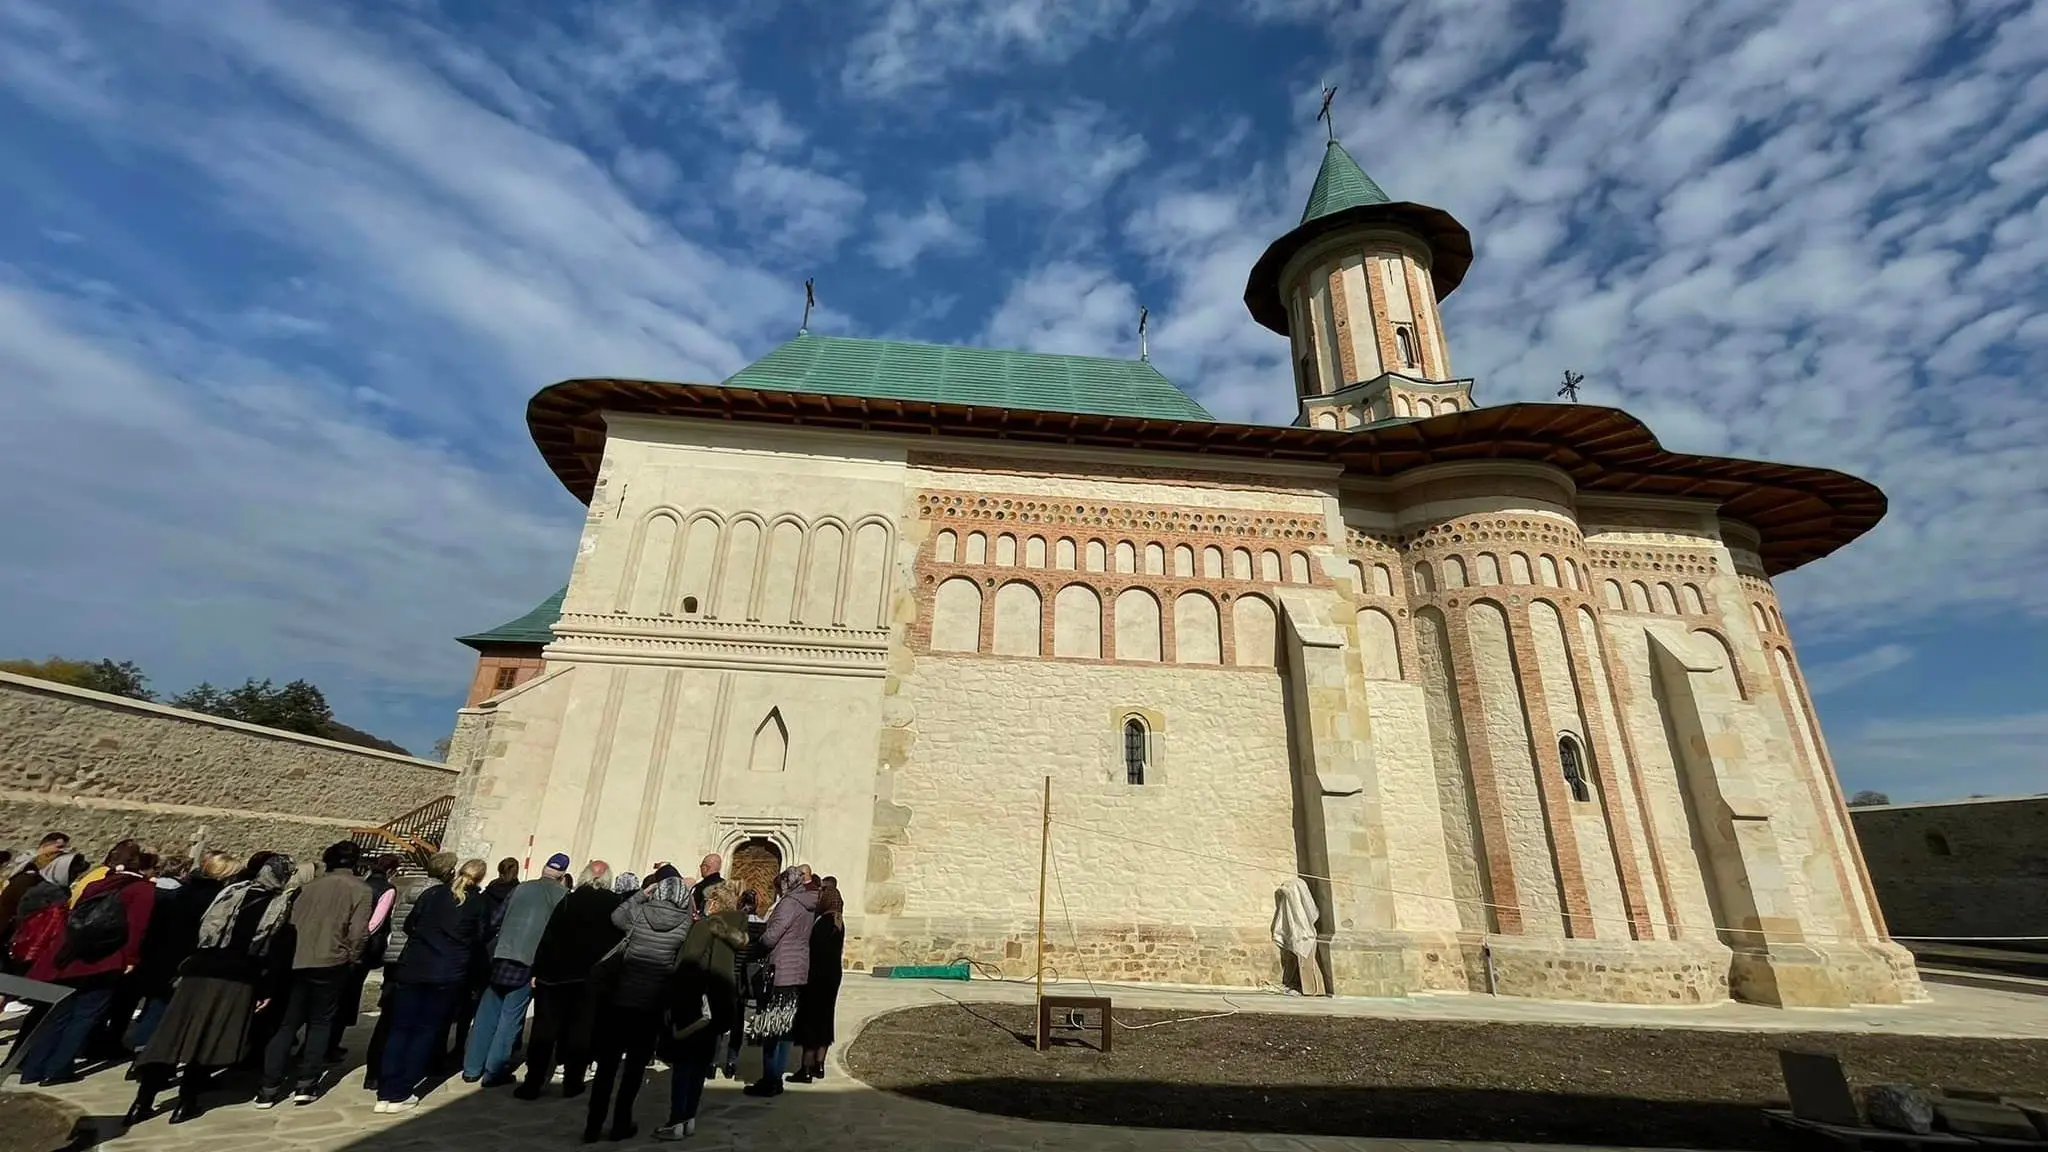 Le monastère de tazlău, fondation de saint Étienne le grand, a été rénové grâce à des fonds européens